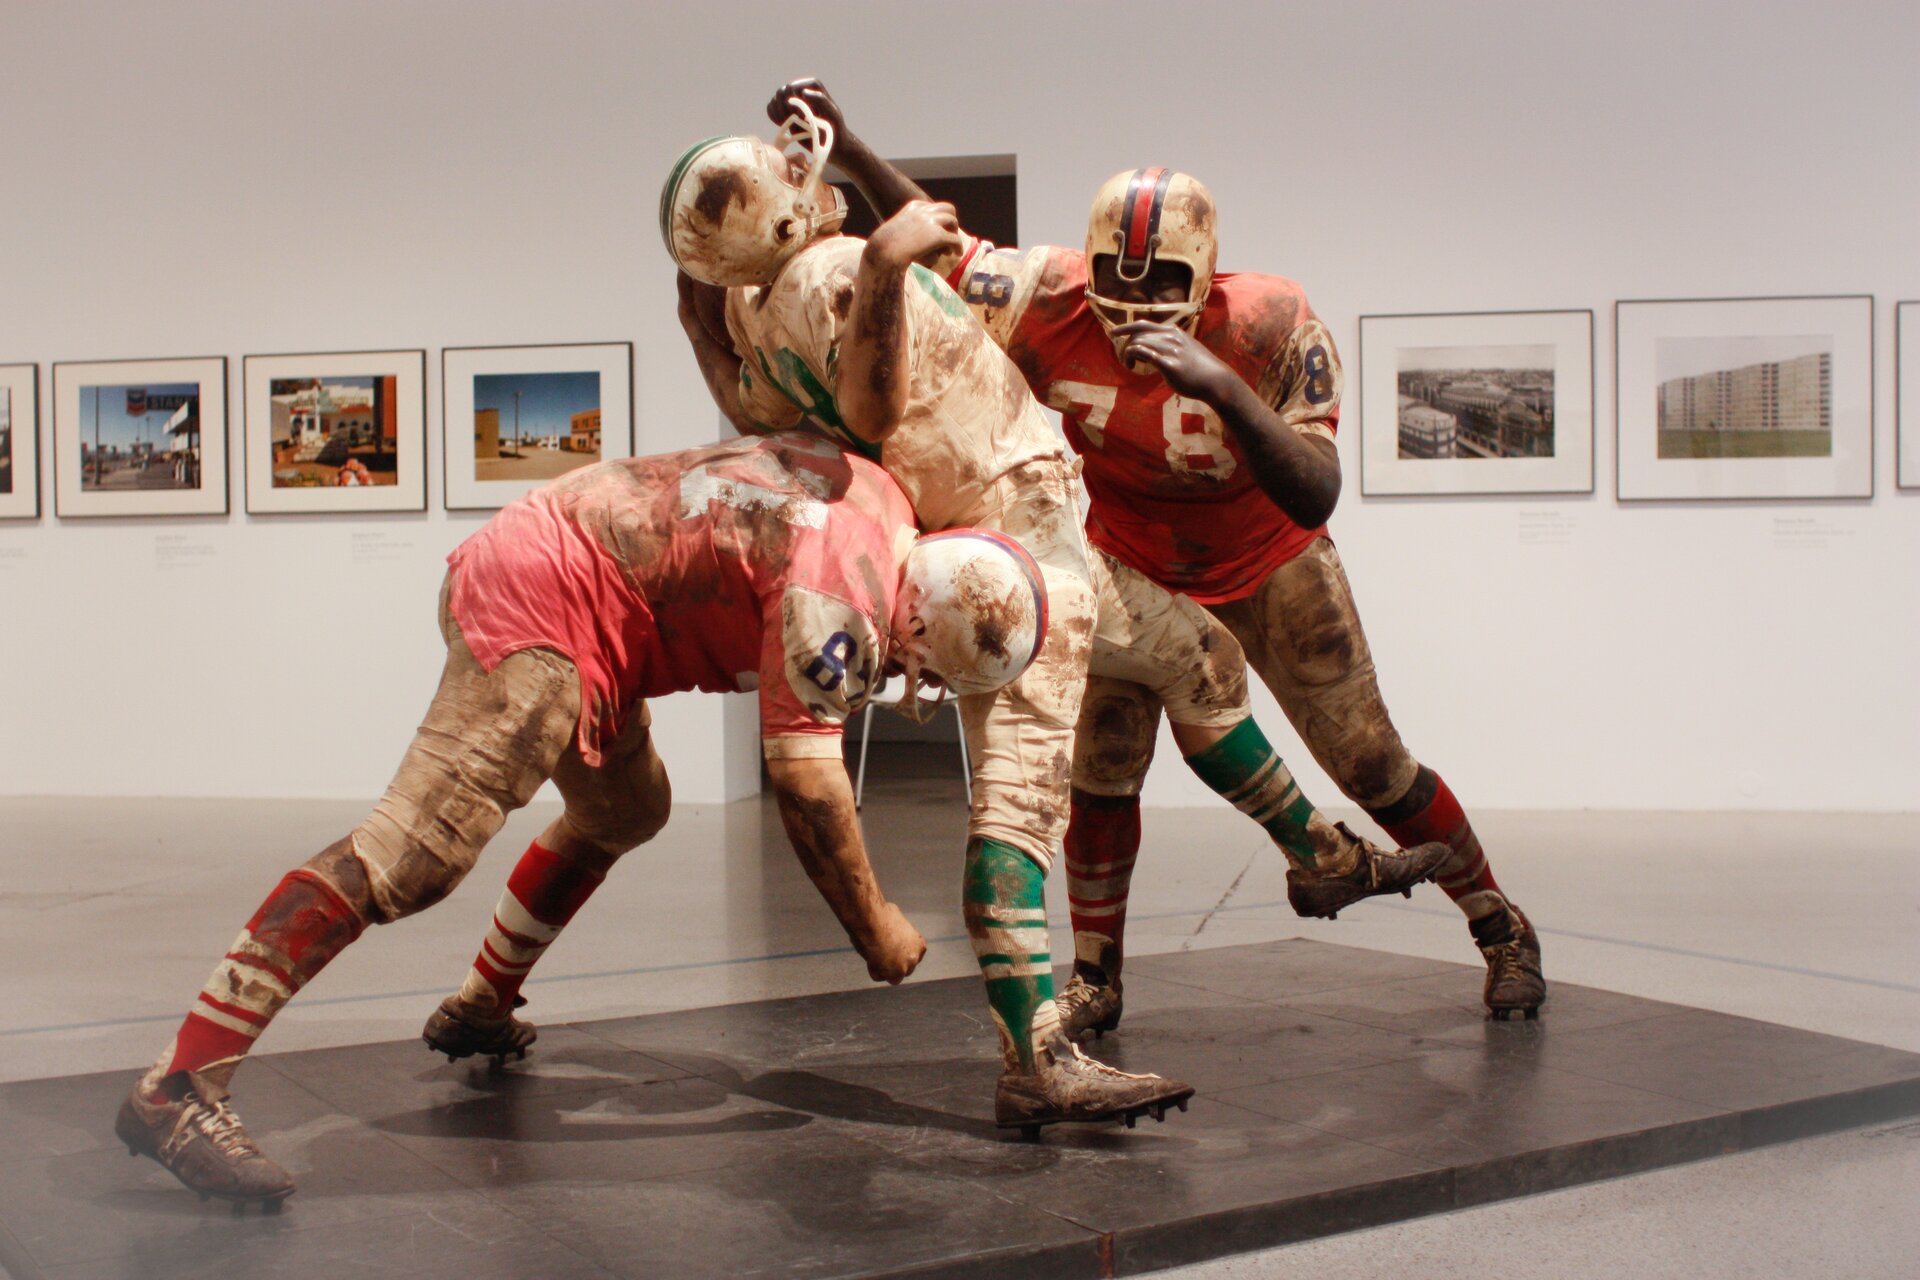 Ilustracja przedstawia pracę Duane Hensona „Football Vignette”. Rzeźba ta przedstawia scenę walki o piłkę. Rzeźba składa się z trzech postaci - dwóch w czerwonym stroju i jedna postać w białym.